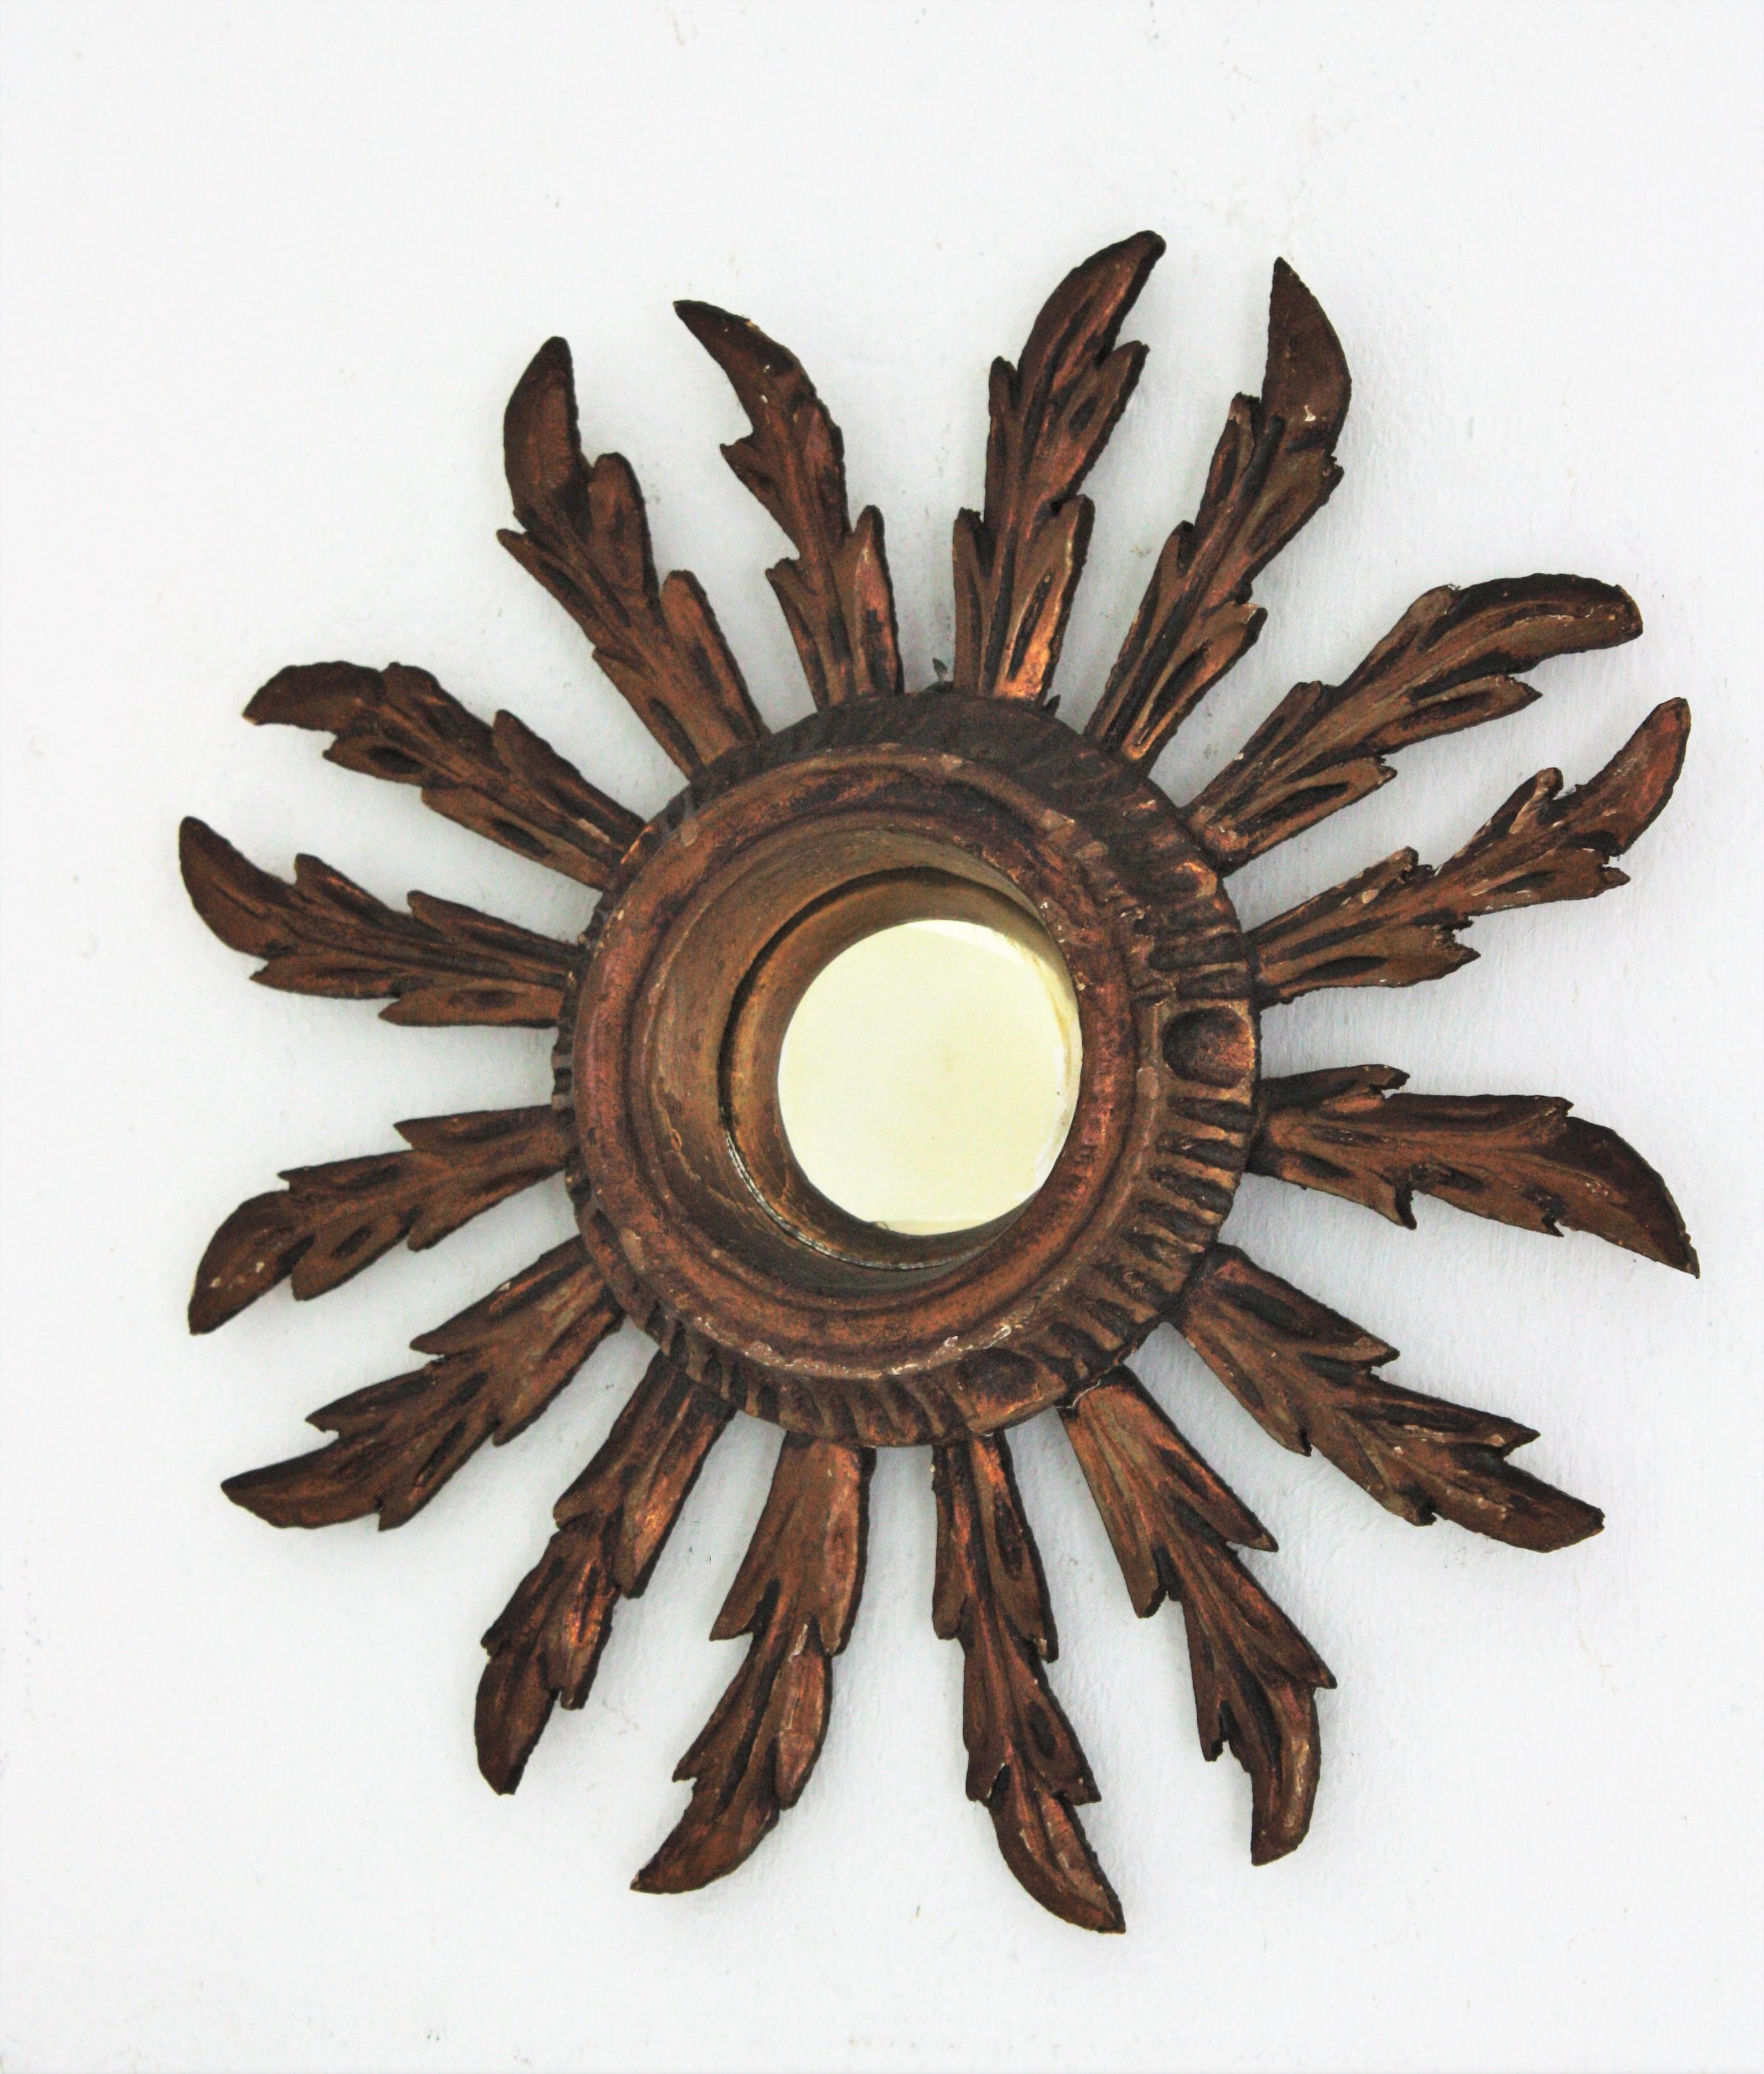 Gesso Sunburst Convex Mirror in Small Scale, Baroque Style For Sale